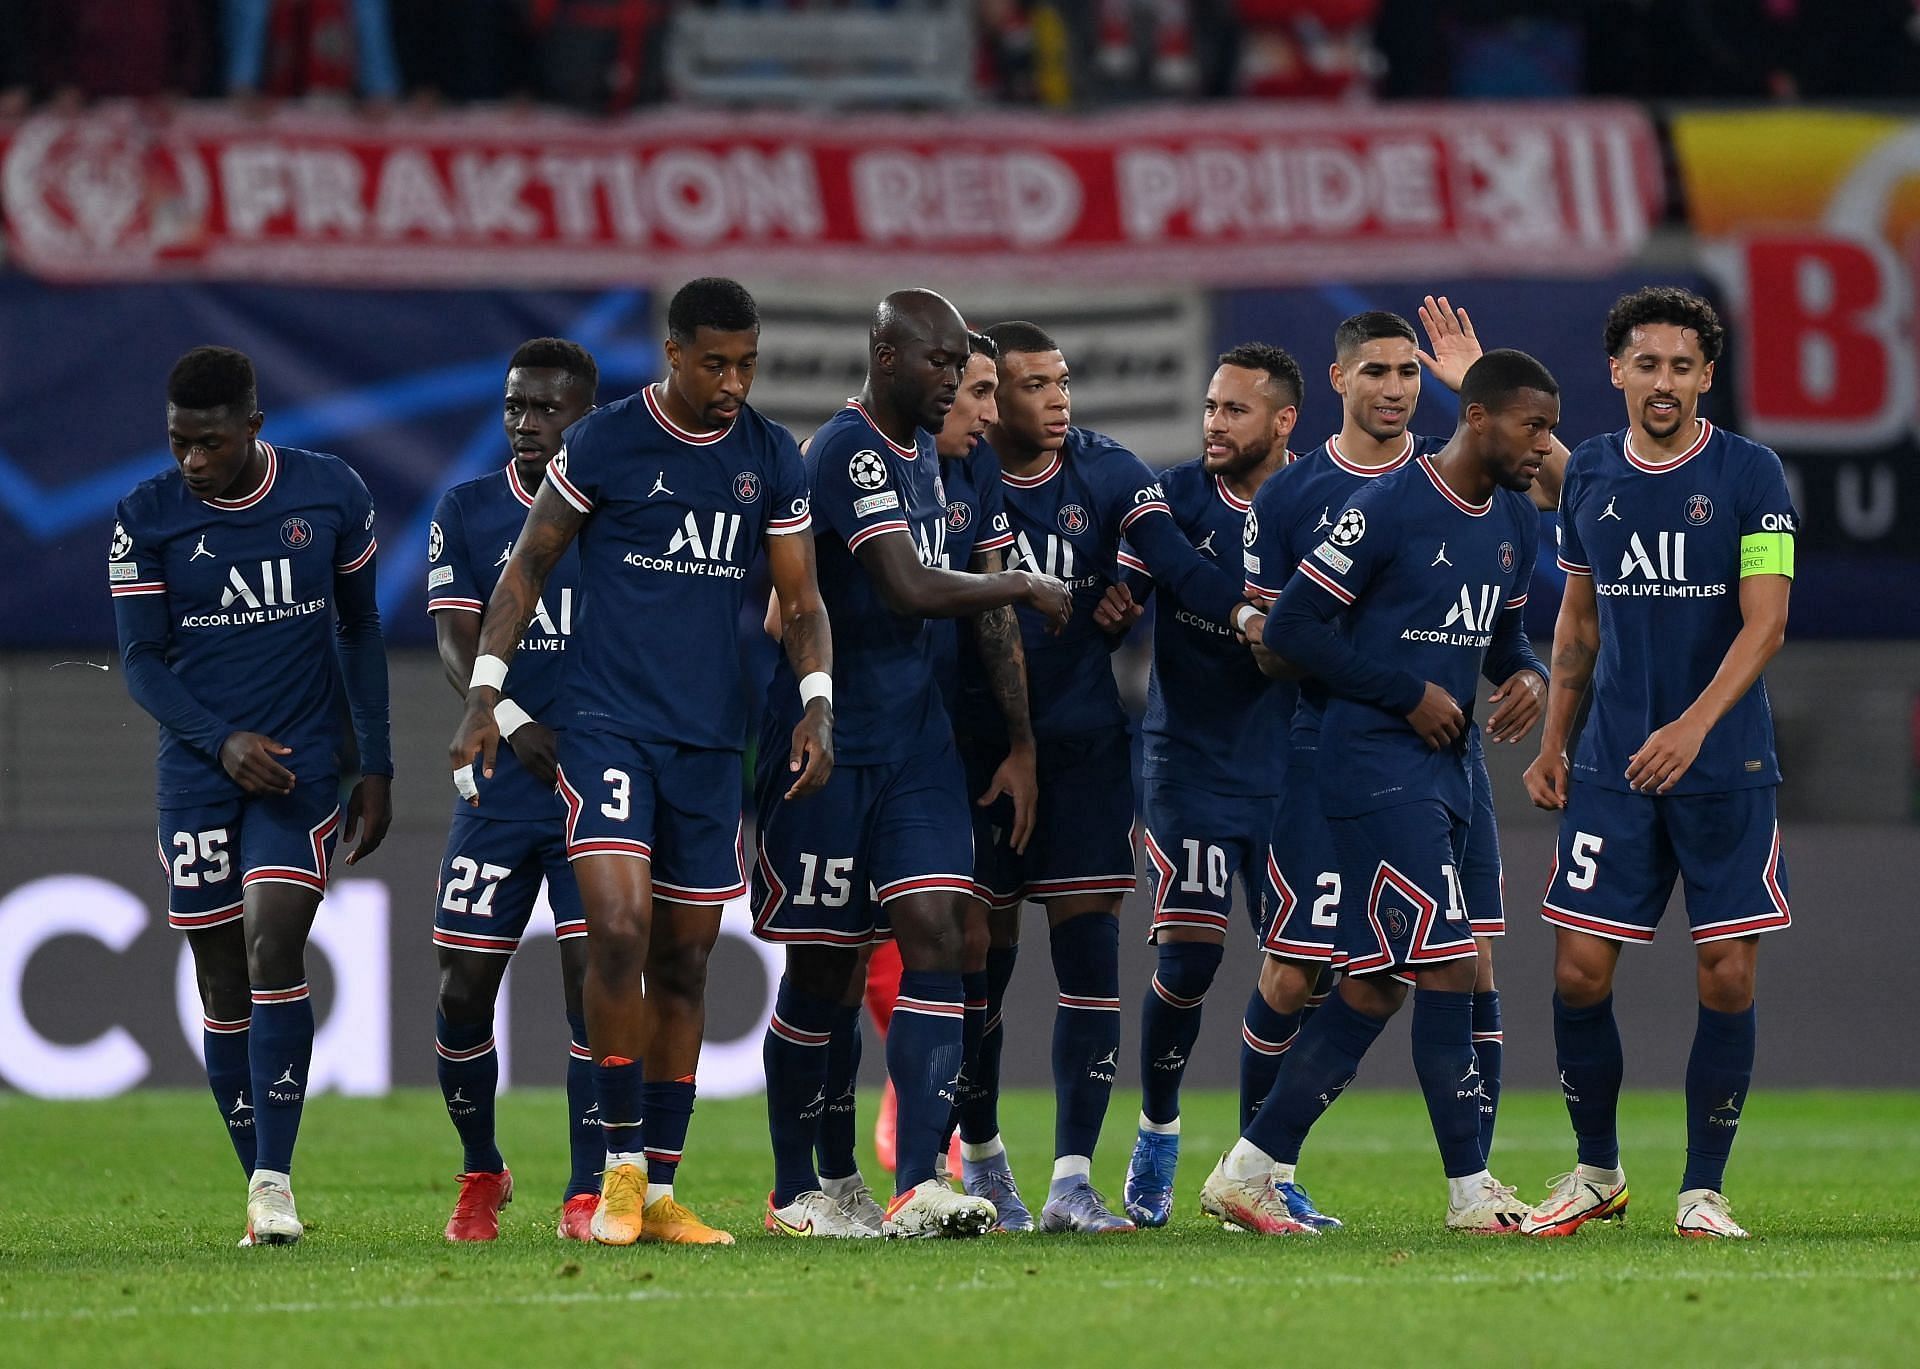 PSG are certain to win the Ligue 1 this season (Image via Sportskeeda)